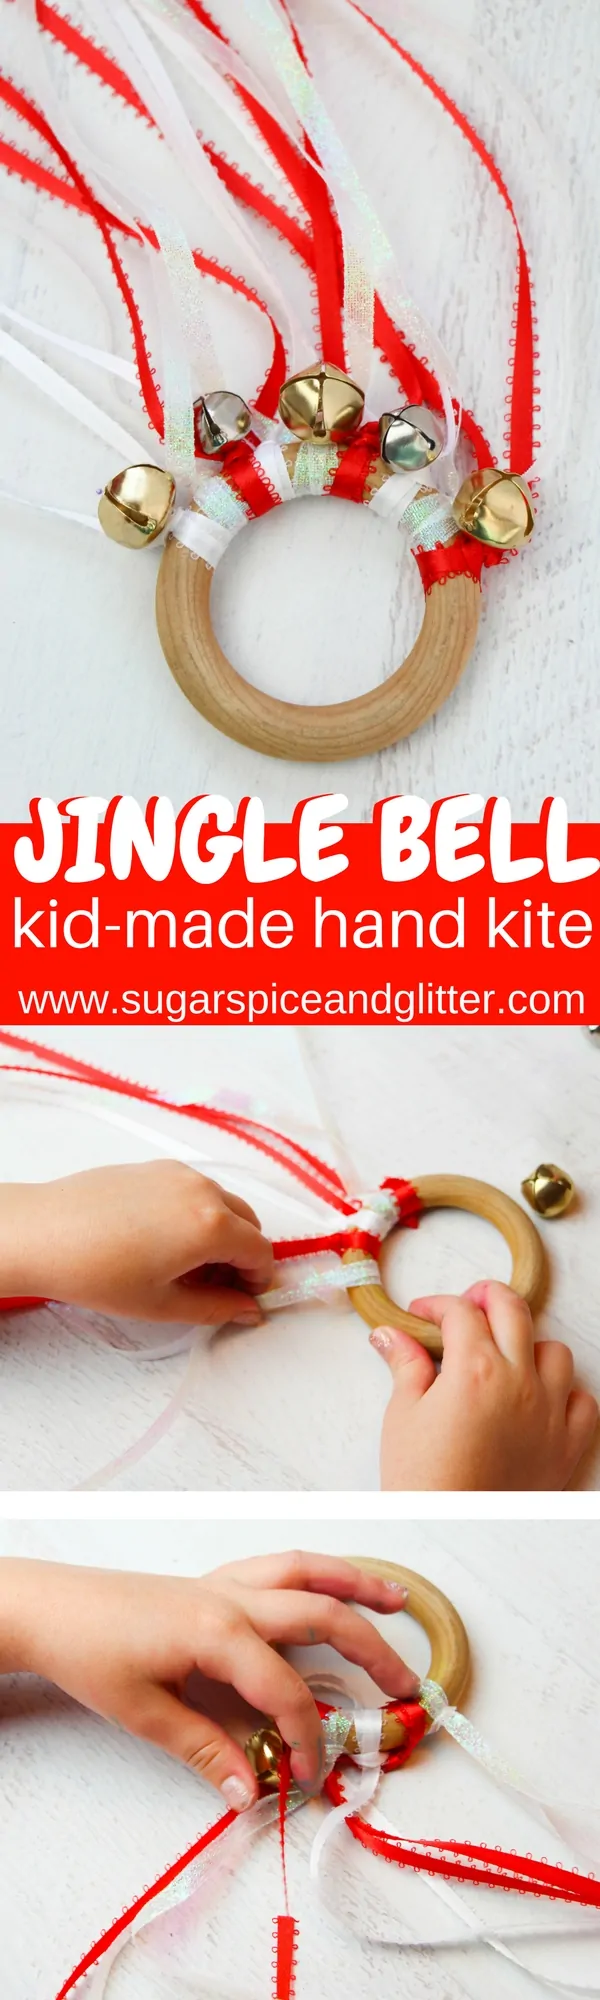 Jingle Bell Waldorf Kite for Christmas